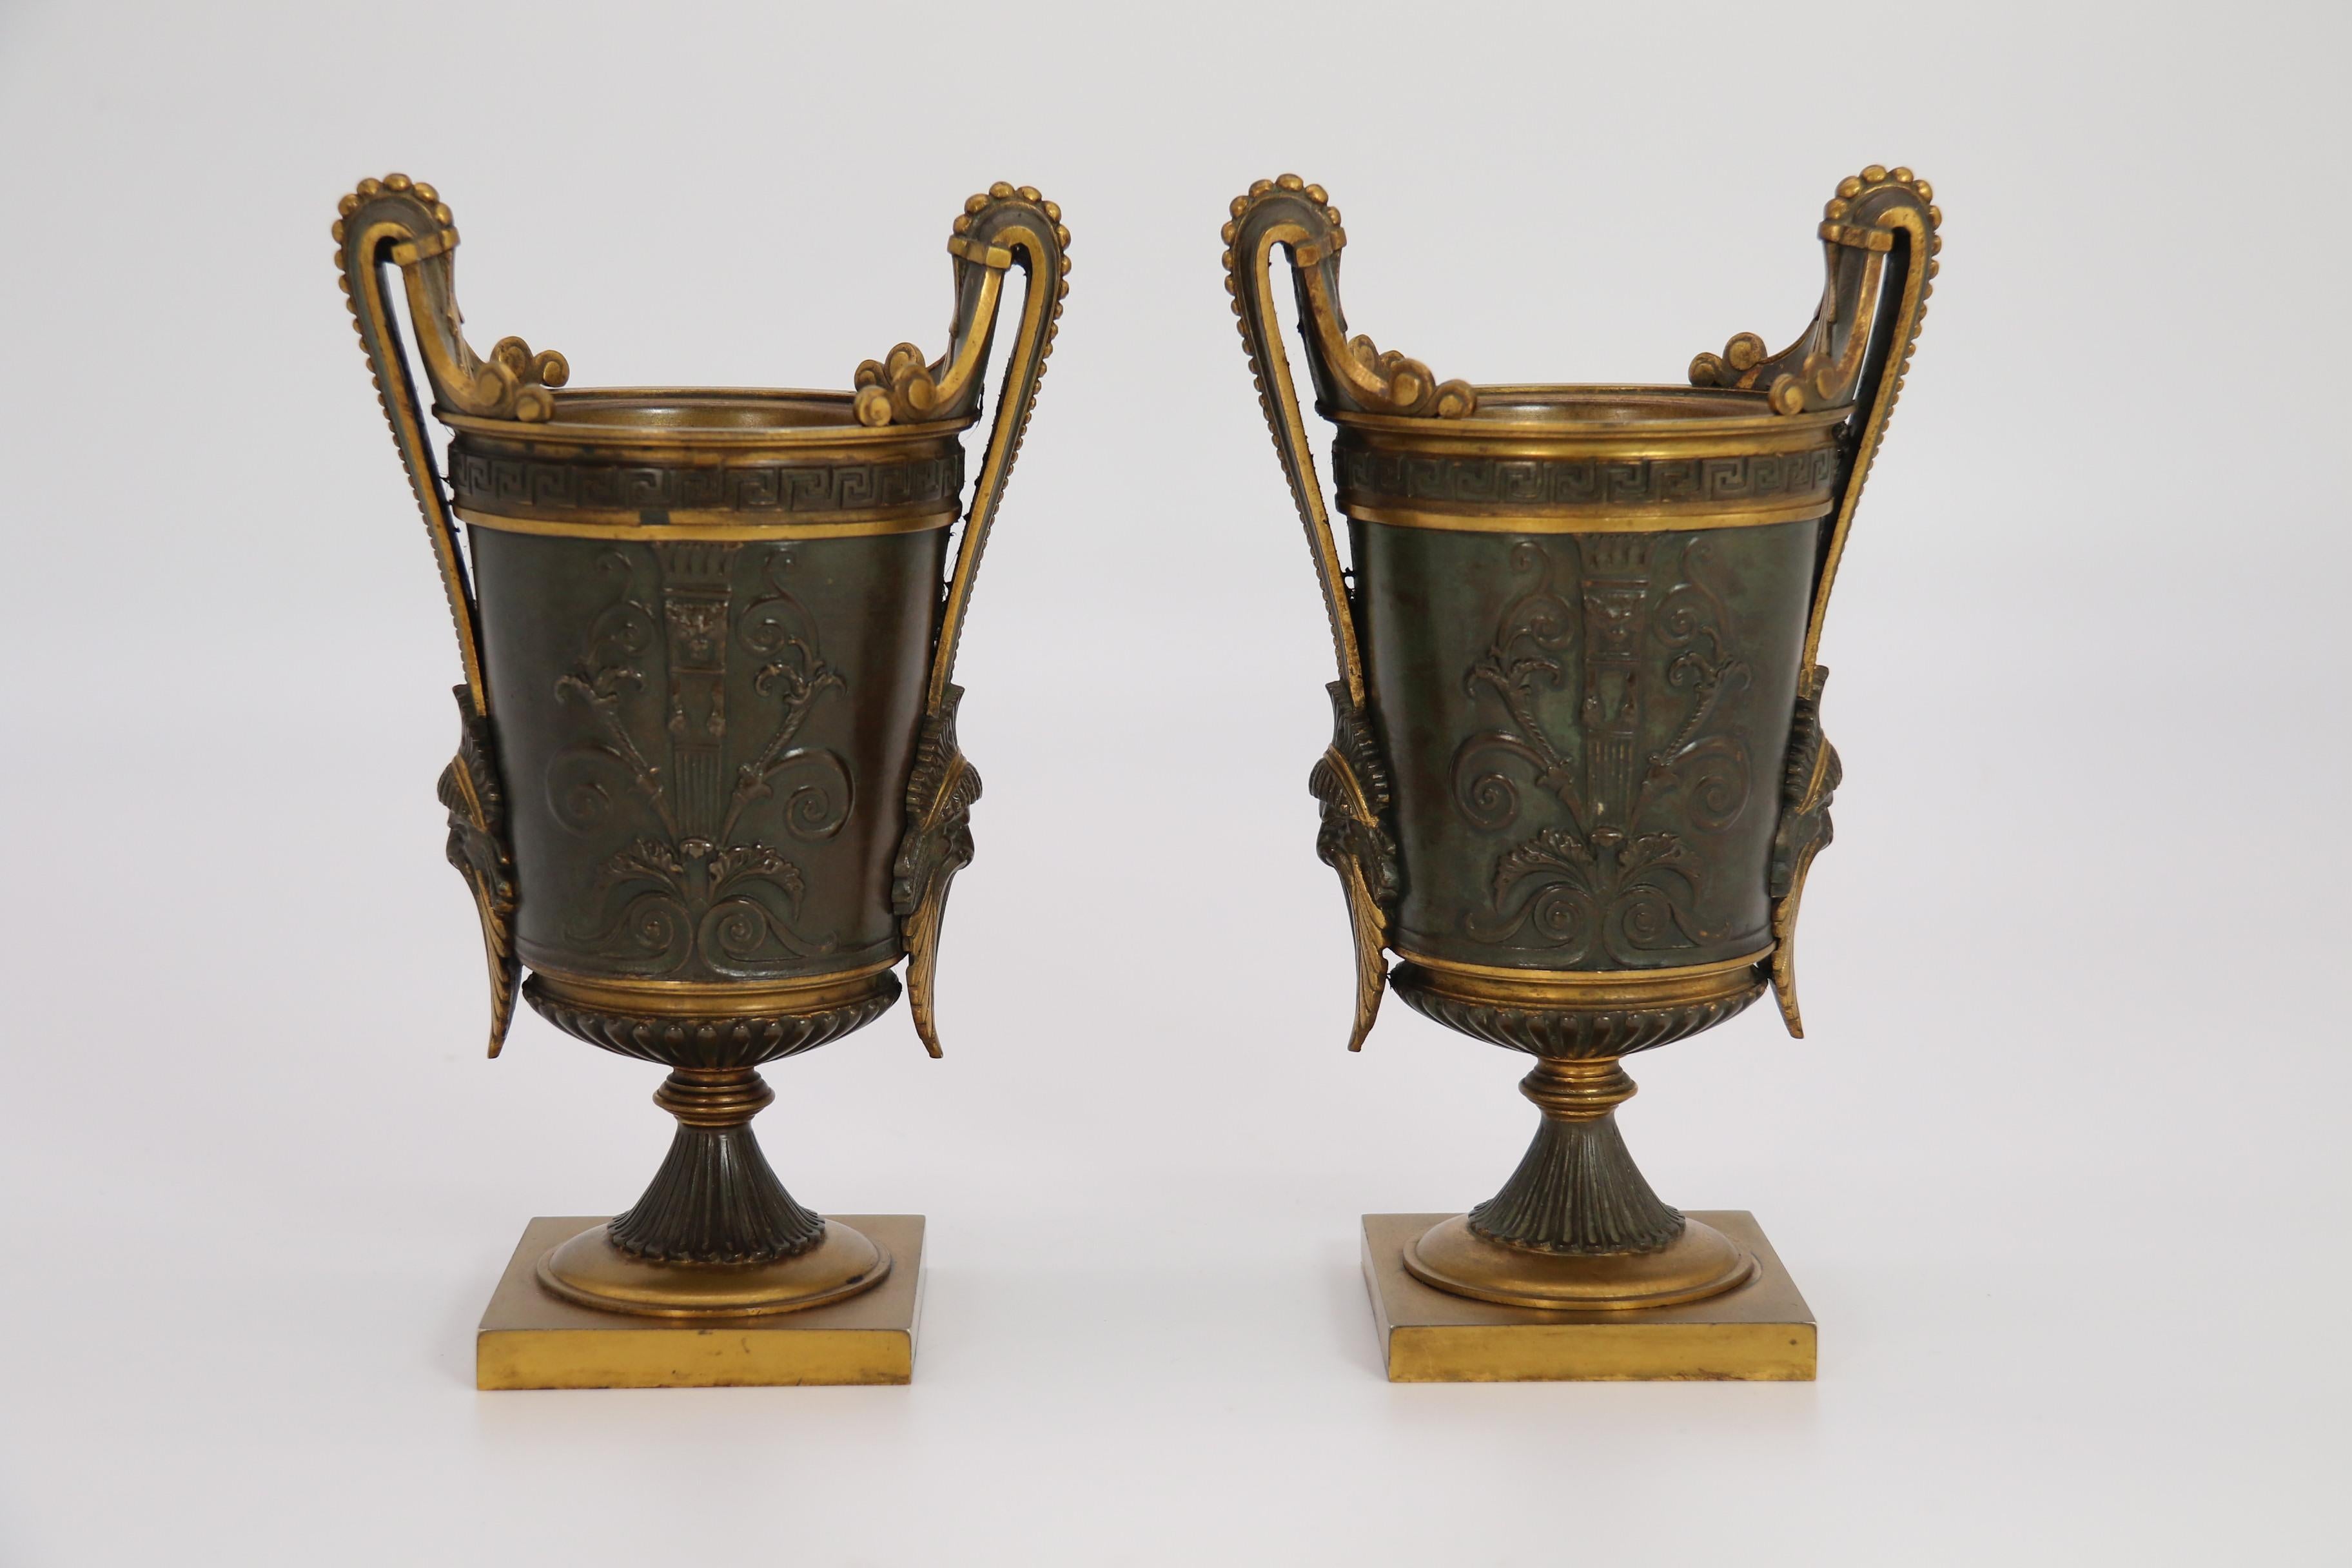 Dieses hochwertige Paar klassischer französischer Empire-Urnen mit zwei Henkeln ist sehr stilvoll und in sehr schwerer, massiver Bronze gegossen. Die einzelnen Abschnitte sind mit originalem Ormolu verziert, das sich in ausgezeichnetem Zustand